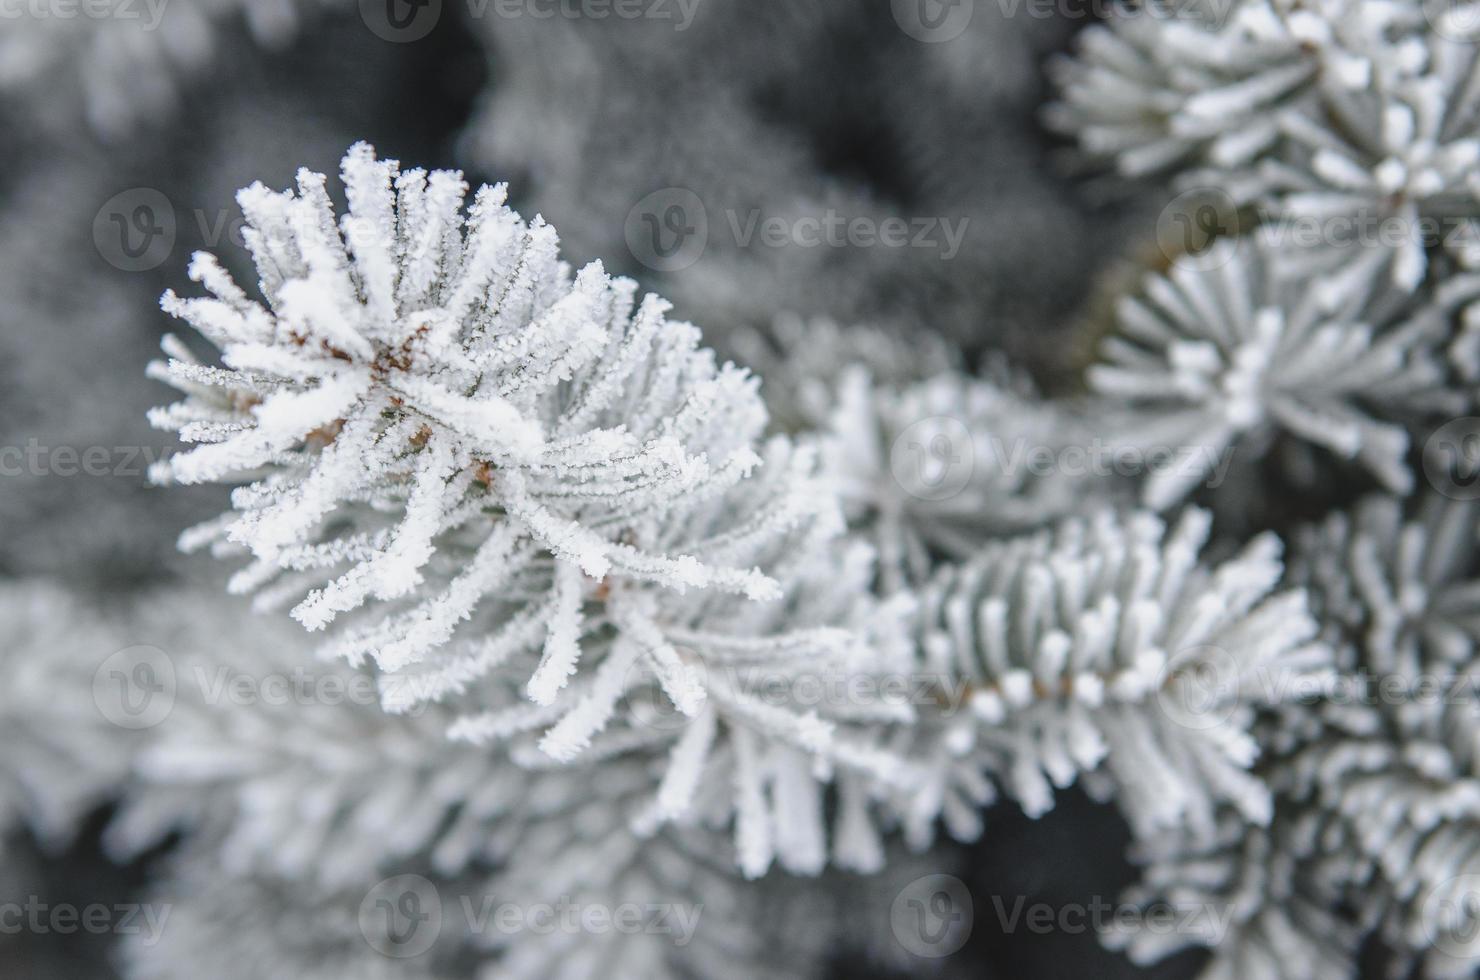 vorst en sneeuw op groene naalden van dennenbomen foto